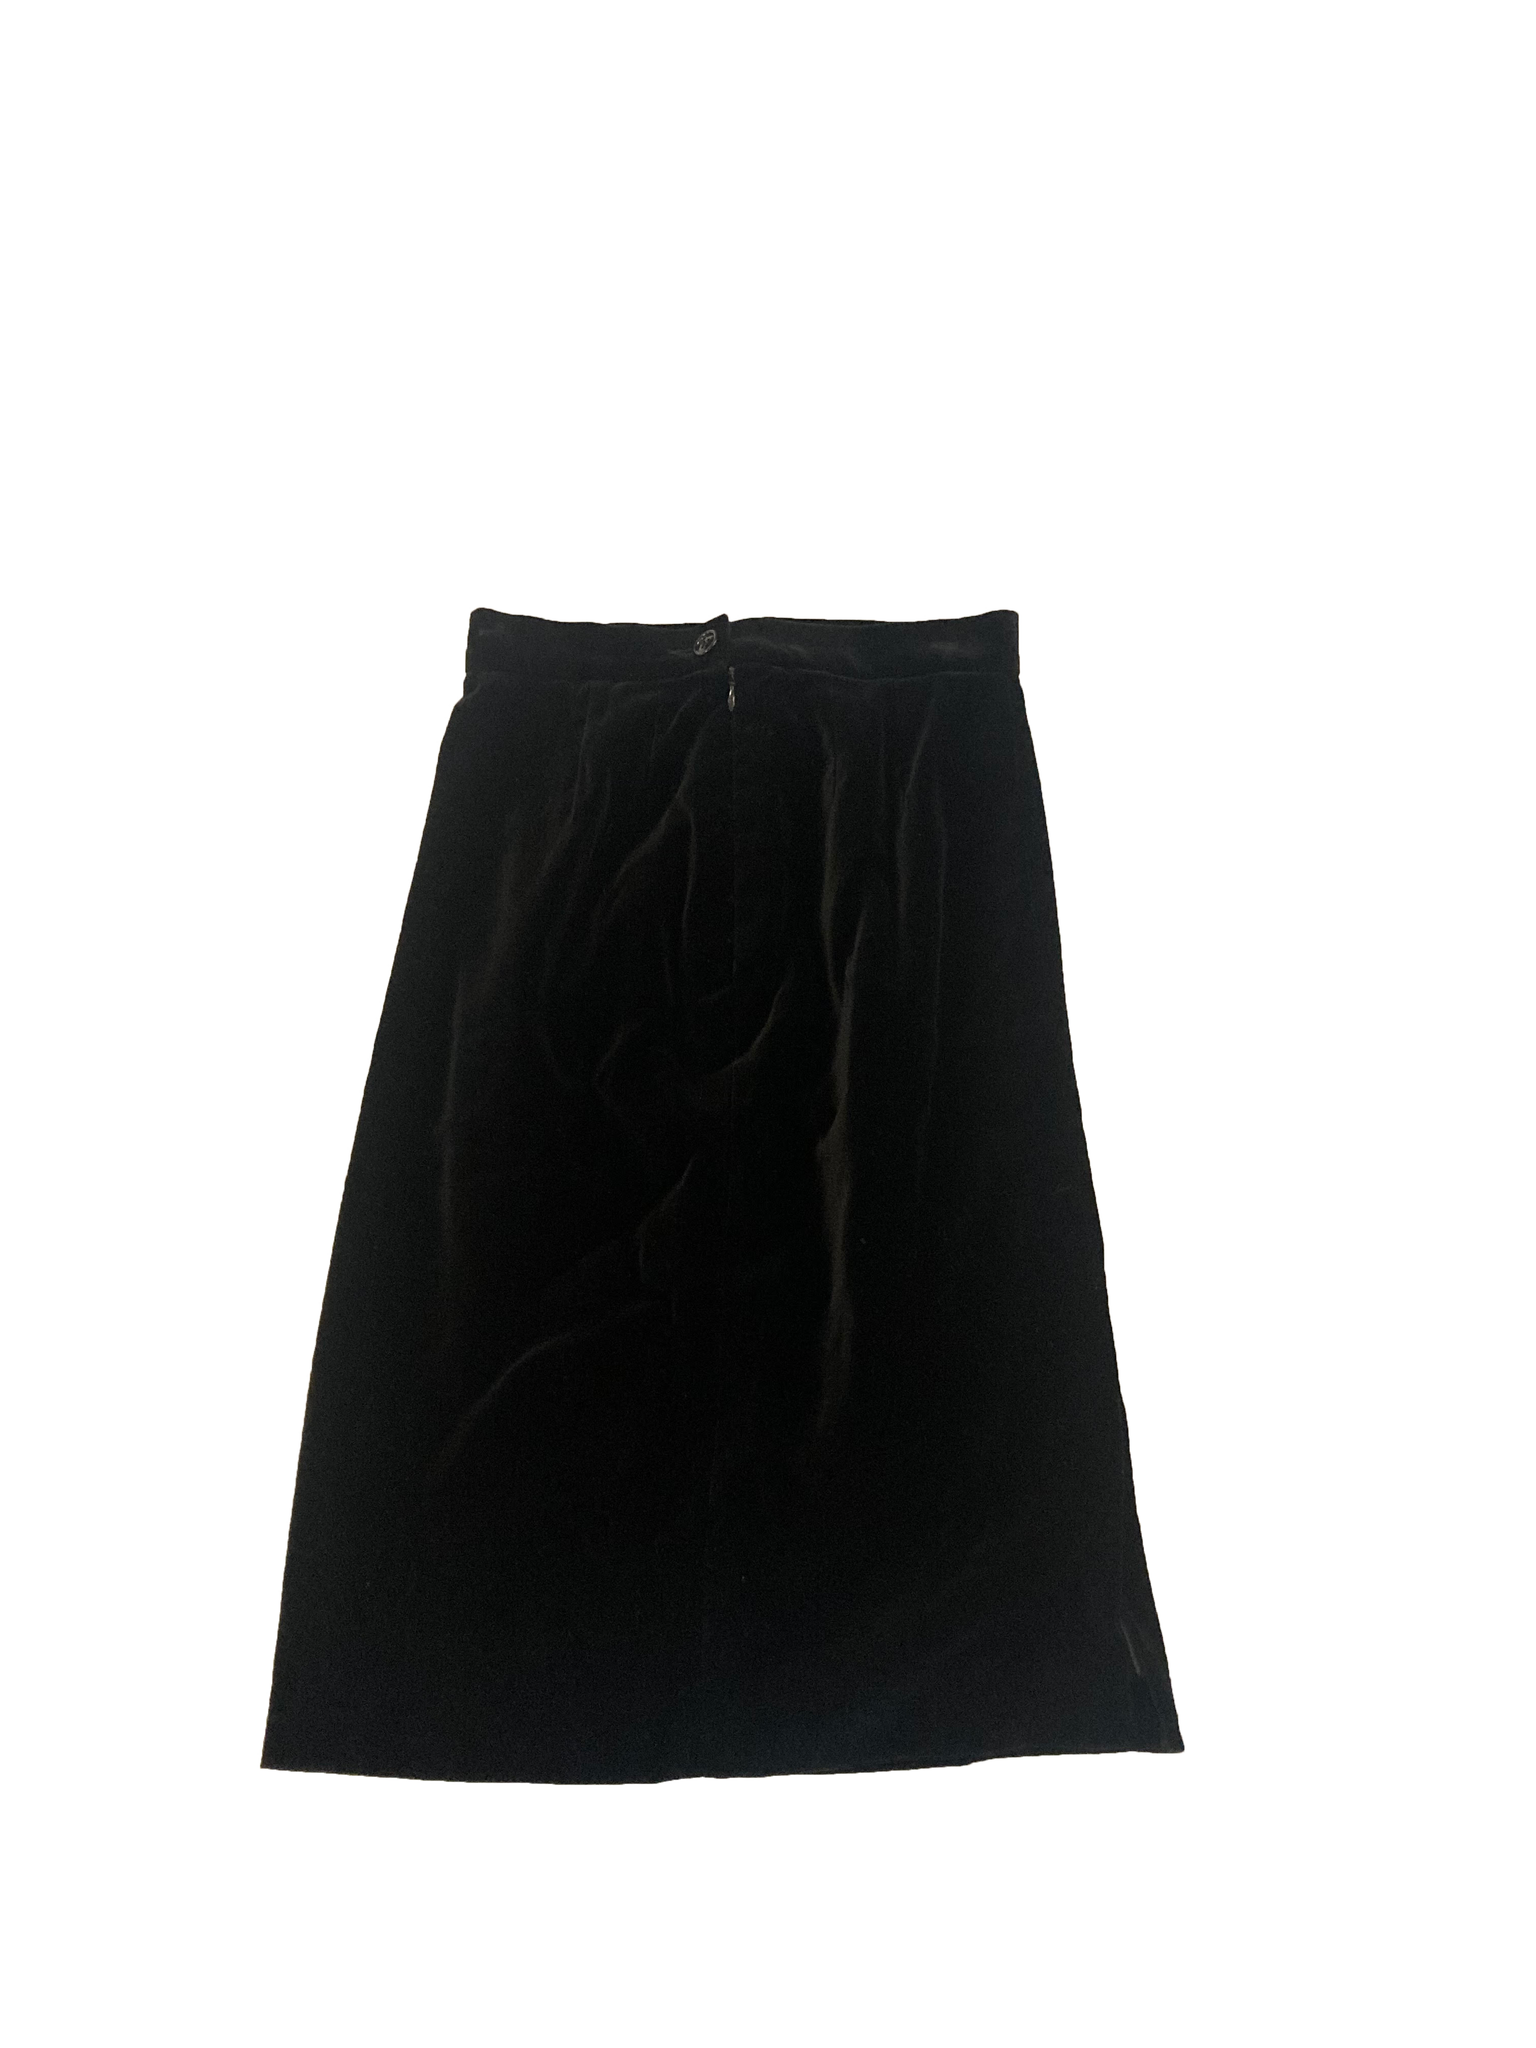 Vintage Velvet Pencil Skirt